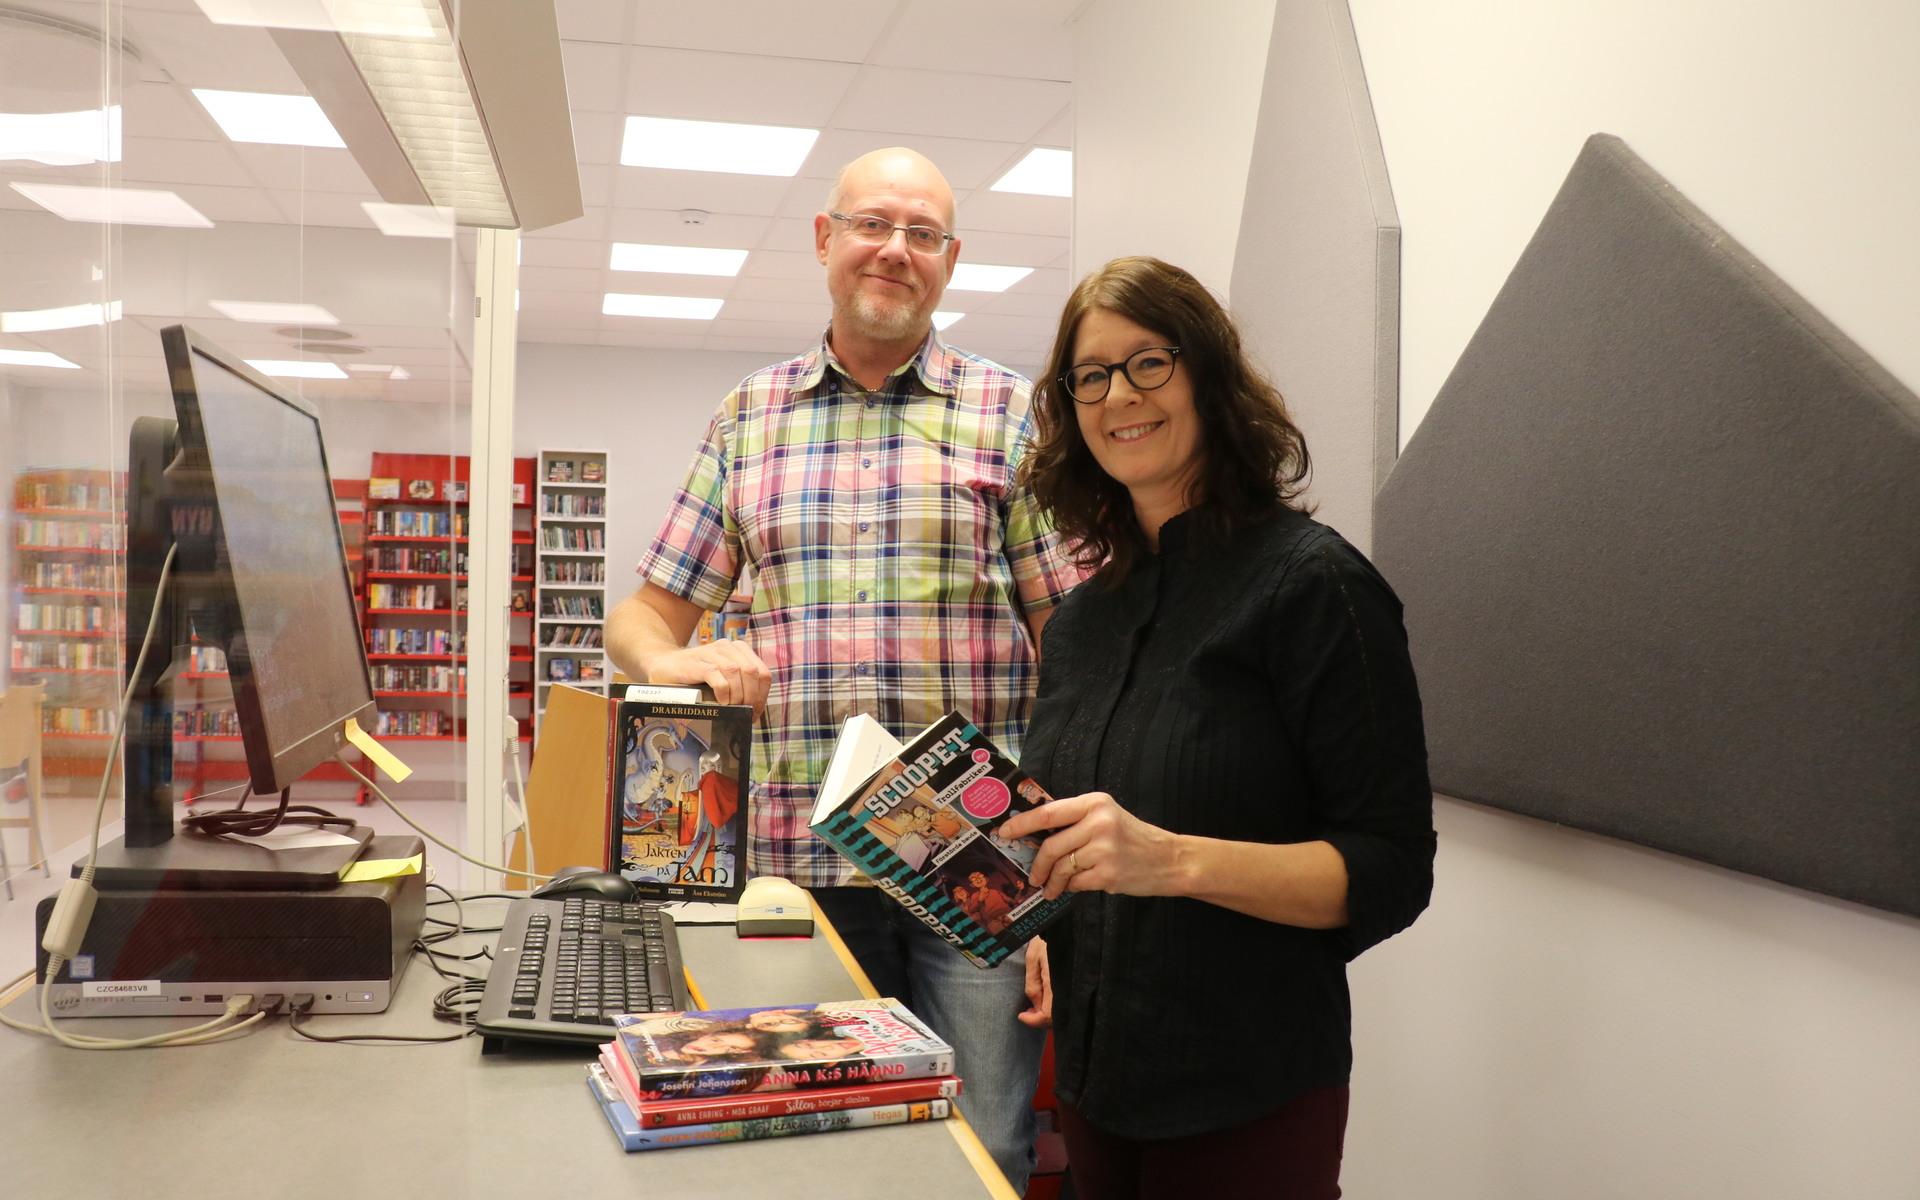 Varekils bibliotek är det minsta i kommunen med ungefär 1000 besökare varje månad. Kulturchef Rickard Wennerberg och Annika Rusch hoppas att fler ska hitta dit när meröppet införs. 